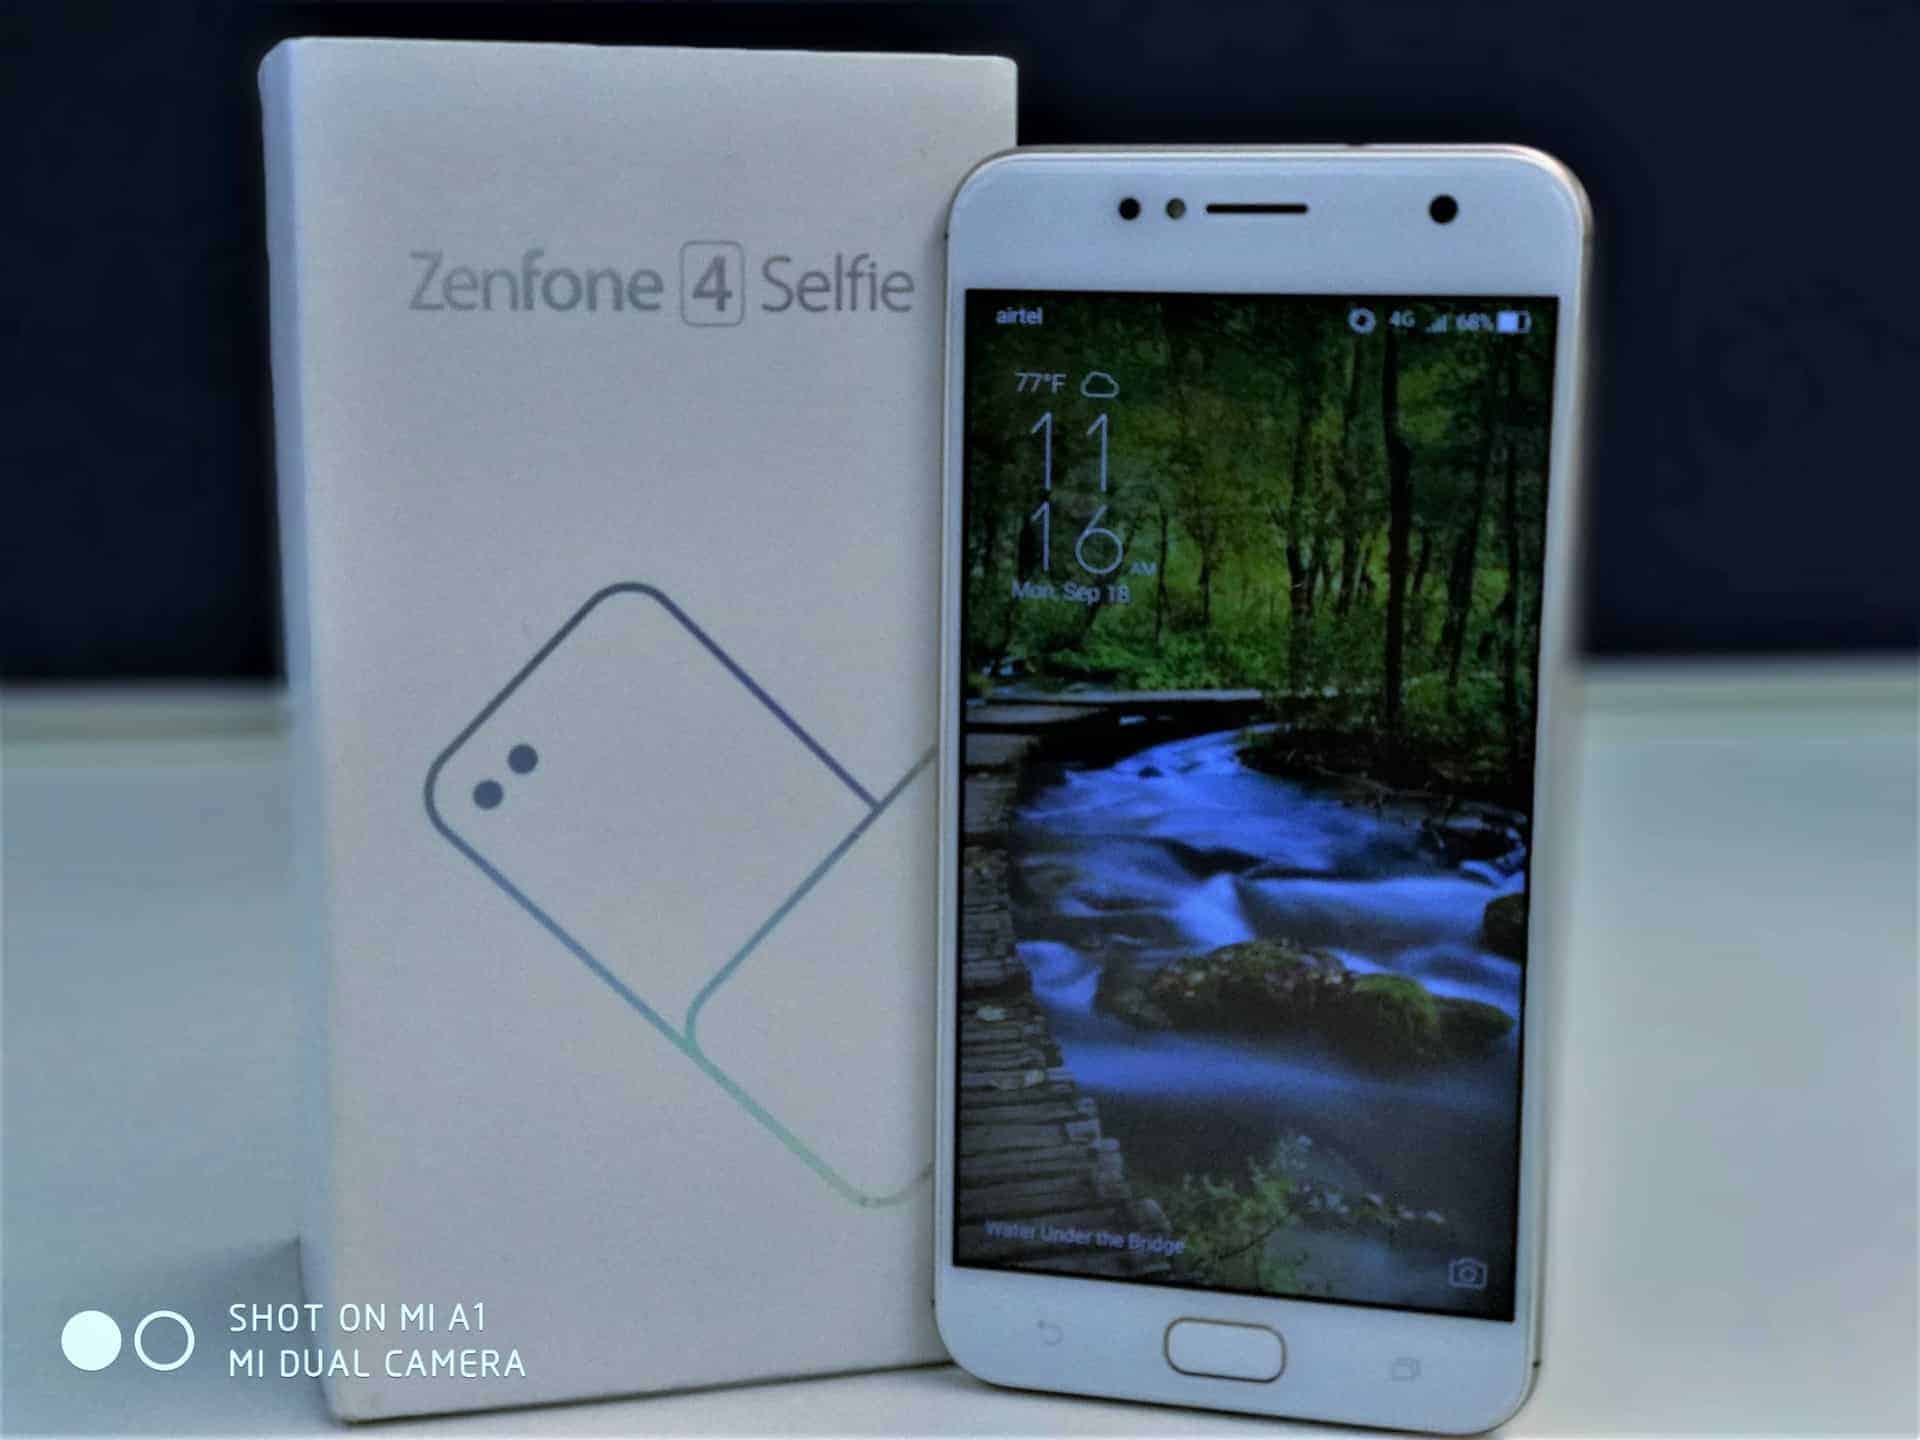 Asus Zenfone 4 Selfie: The Next-Gen Selfie Smartphone for Millennial - 5